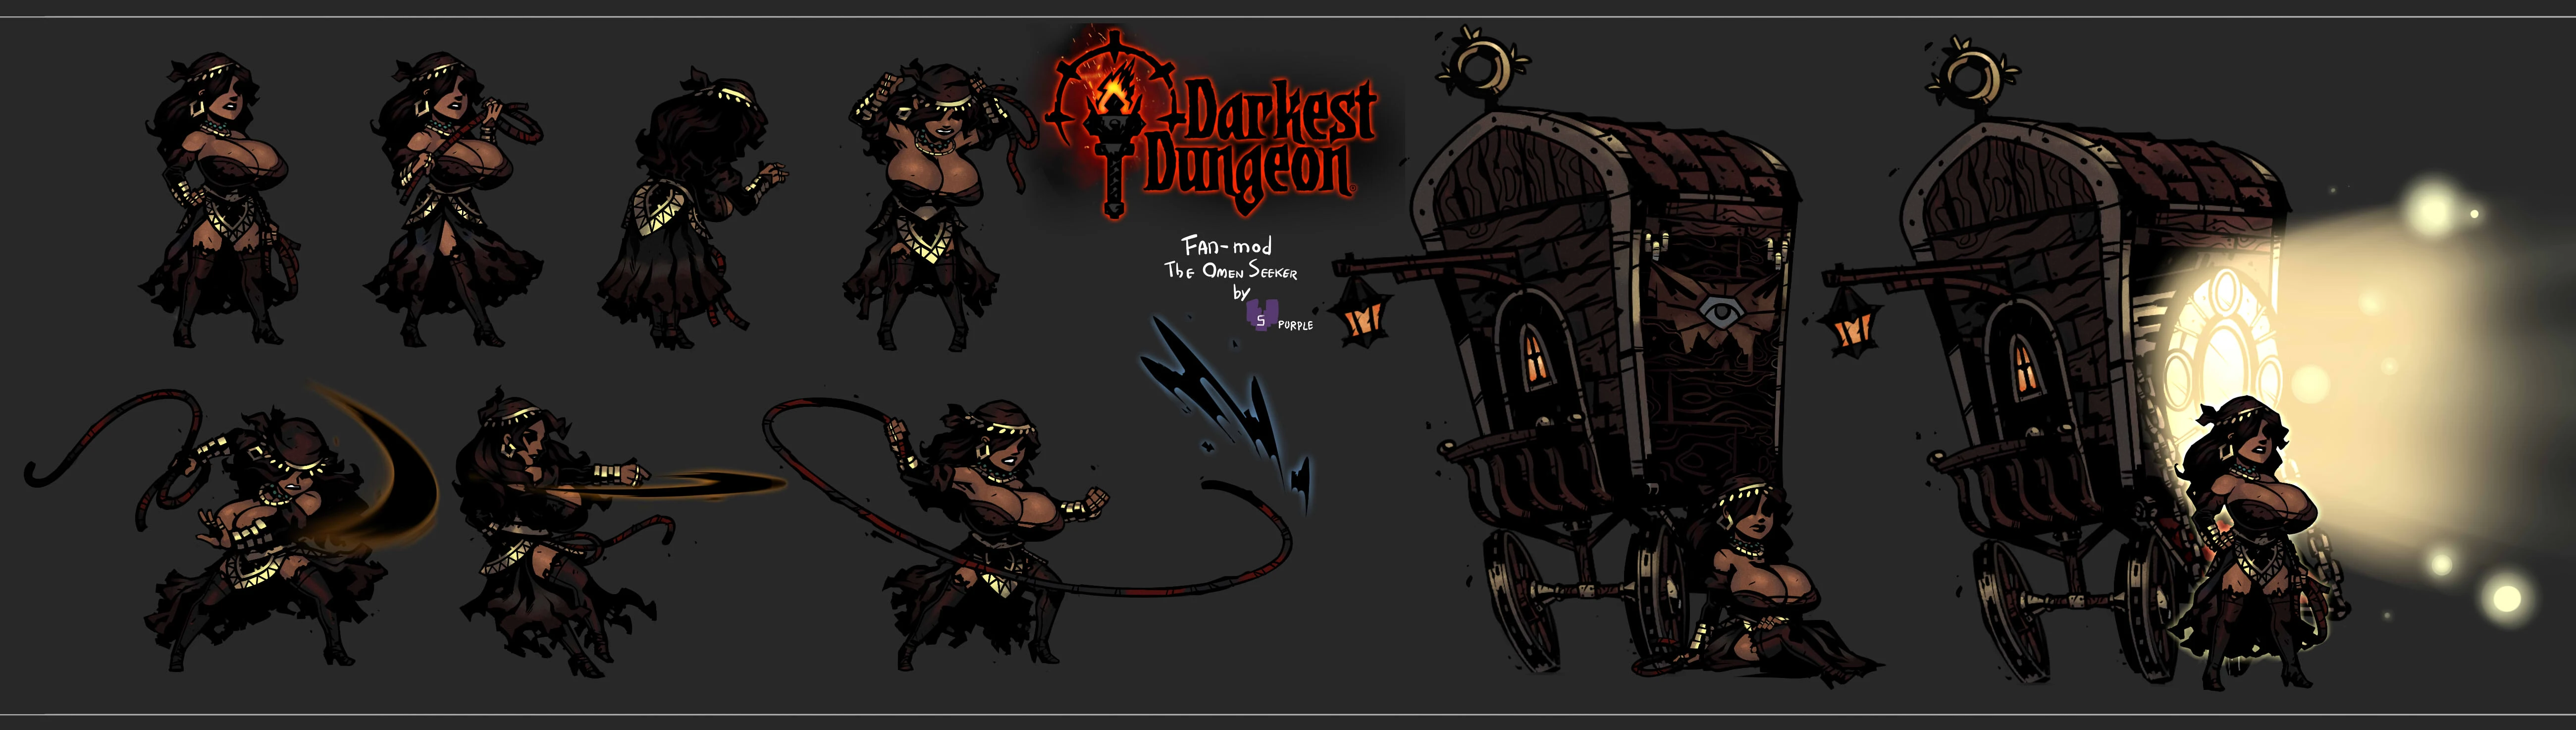 darkest dungeon classes mod